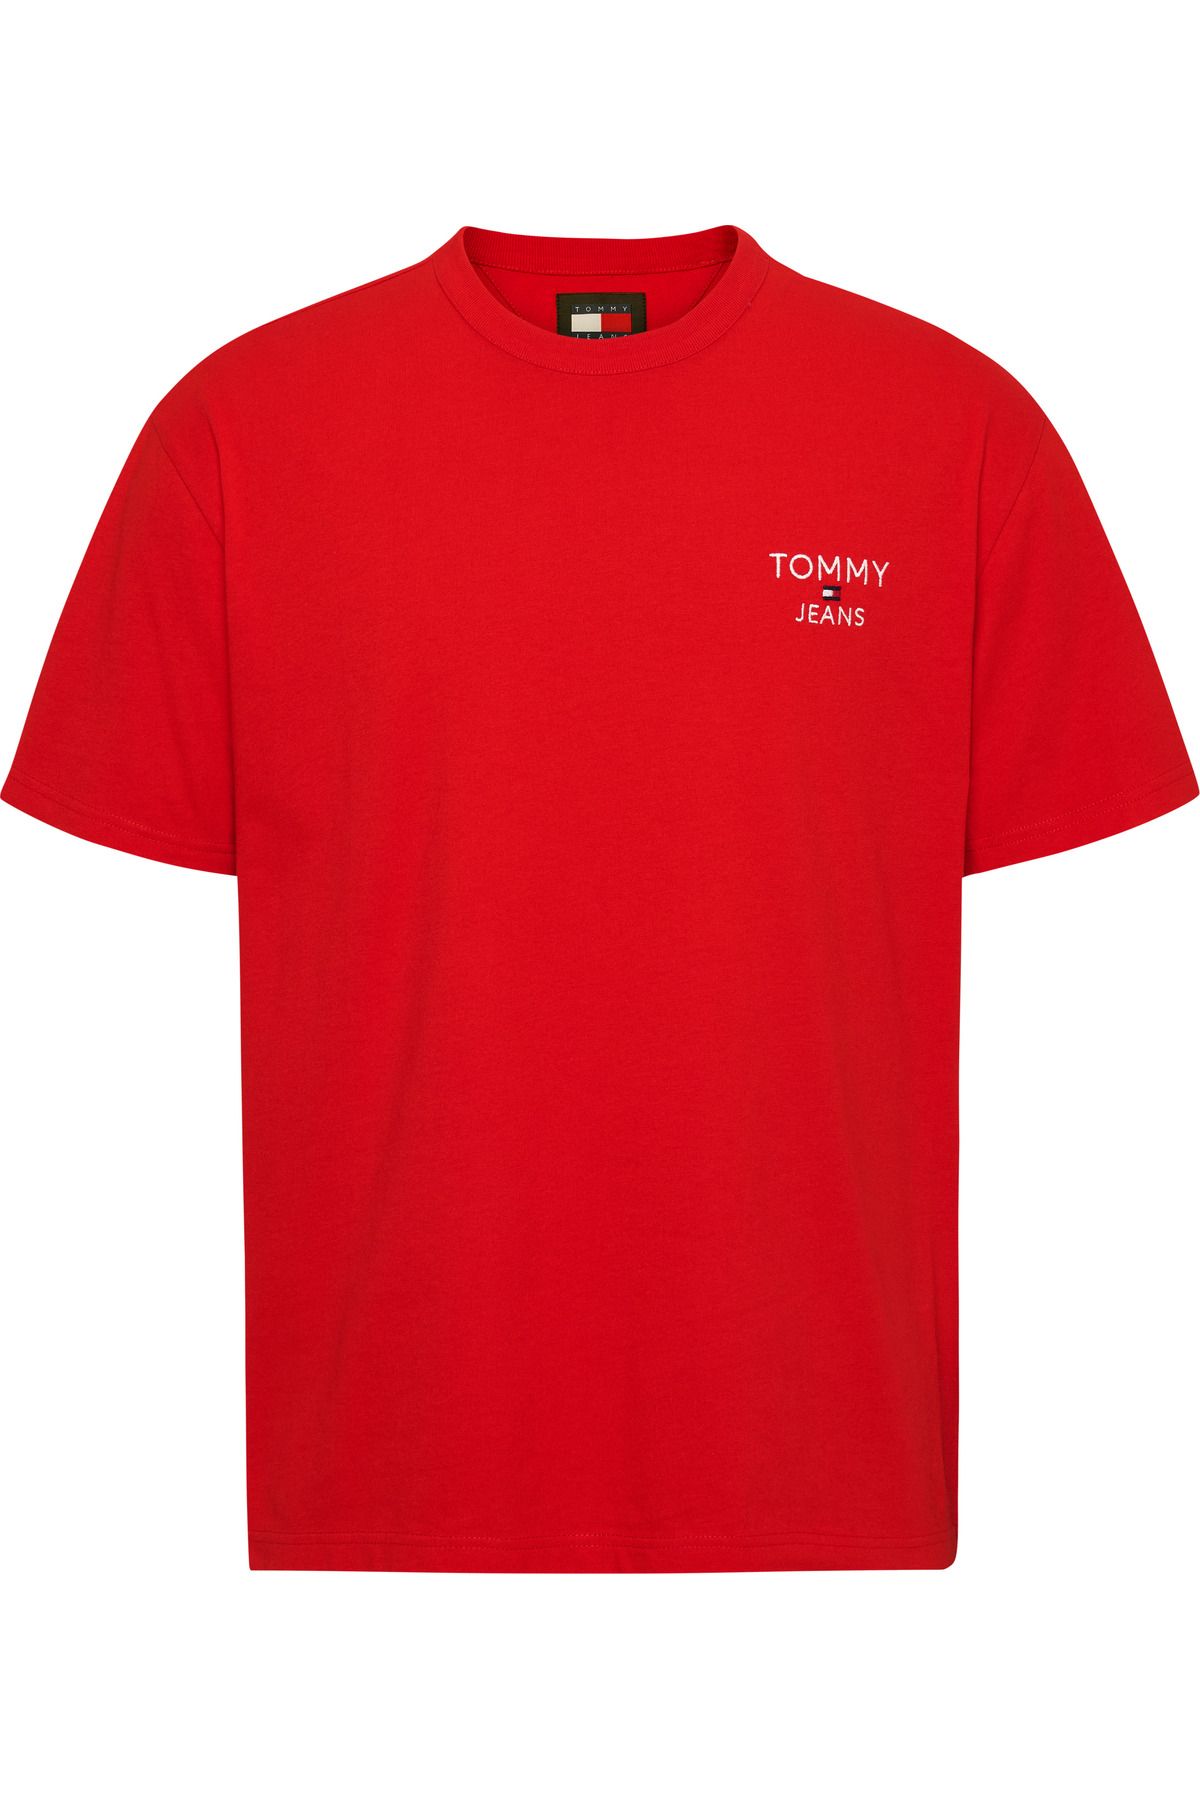 Tommy Hilfiger Erkek Marka Logolu Pamuklu Bisiklet Yakalı Kırmızı T-Shirt DM0DM18872-XNL